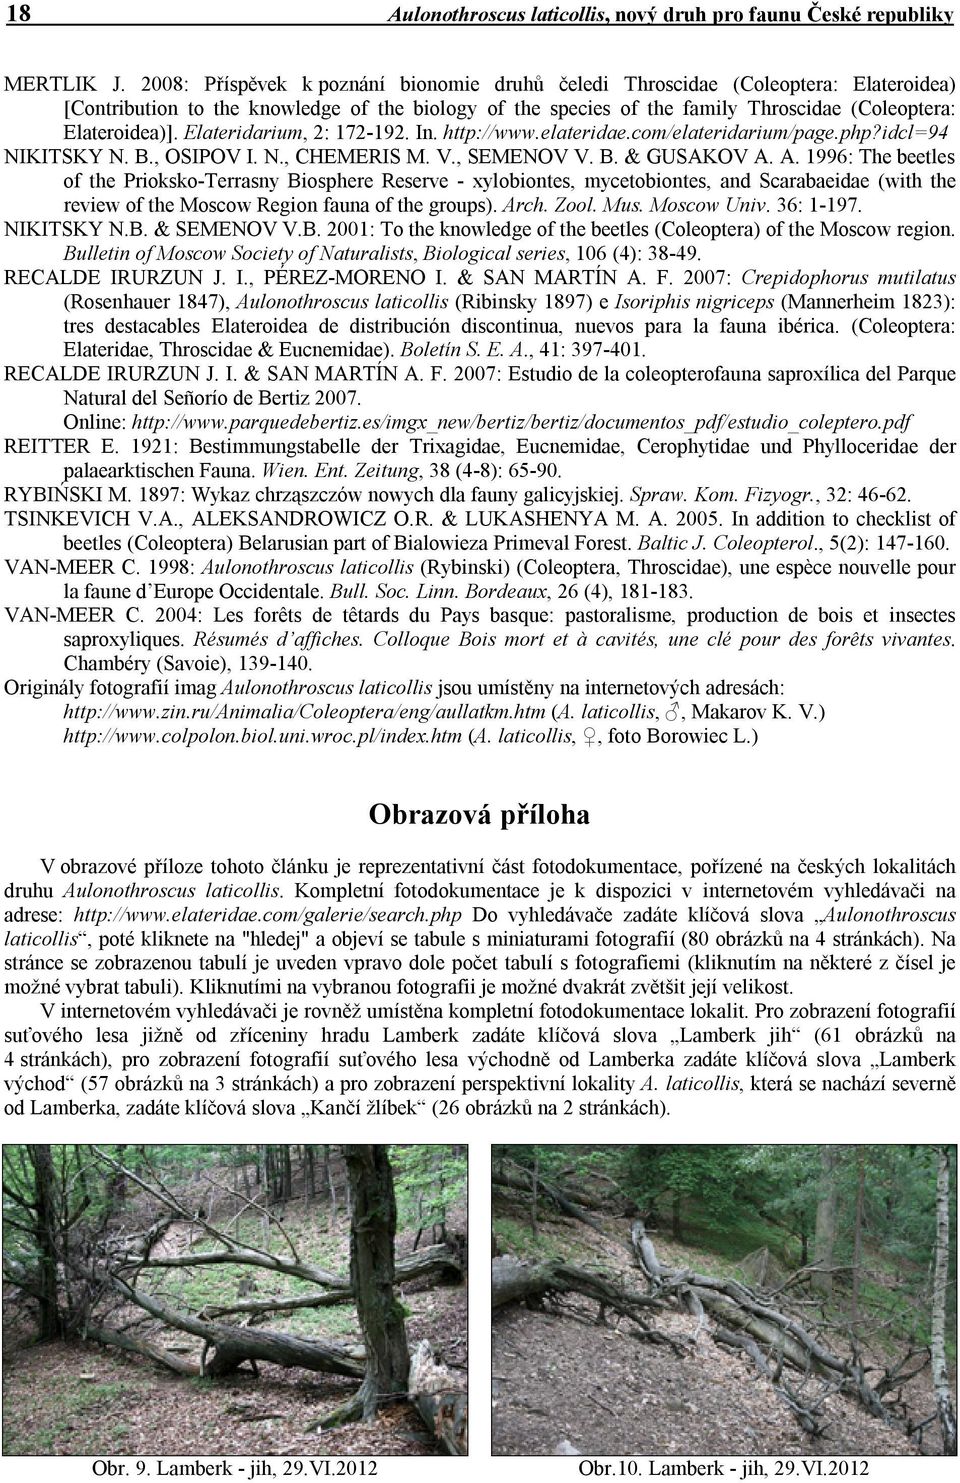 Elateridarium, 2: 172-192. In. http://www.elateridae.com/elateridarium/page.php?idcl=94 NIKITSKY N. B., OSIPOV I. N., CHEMERIS M. V., SEMENOV V. B. & GUSAKOV A.